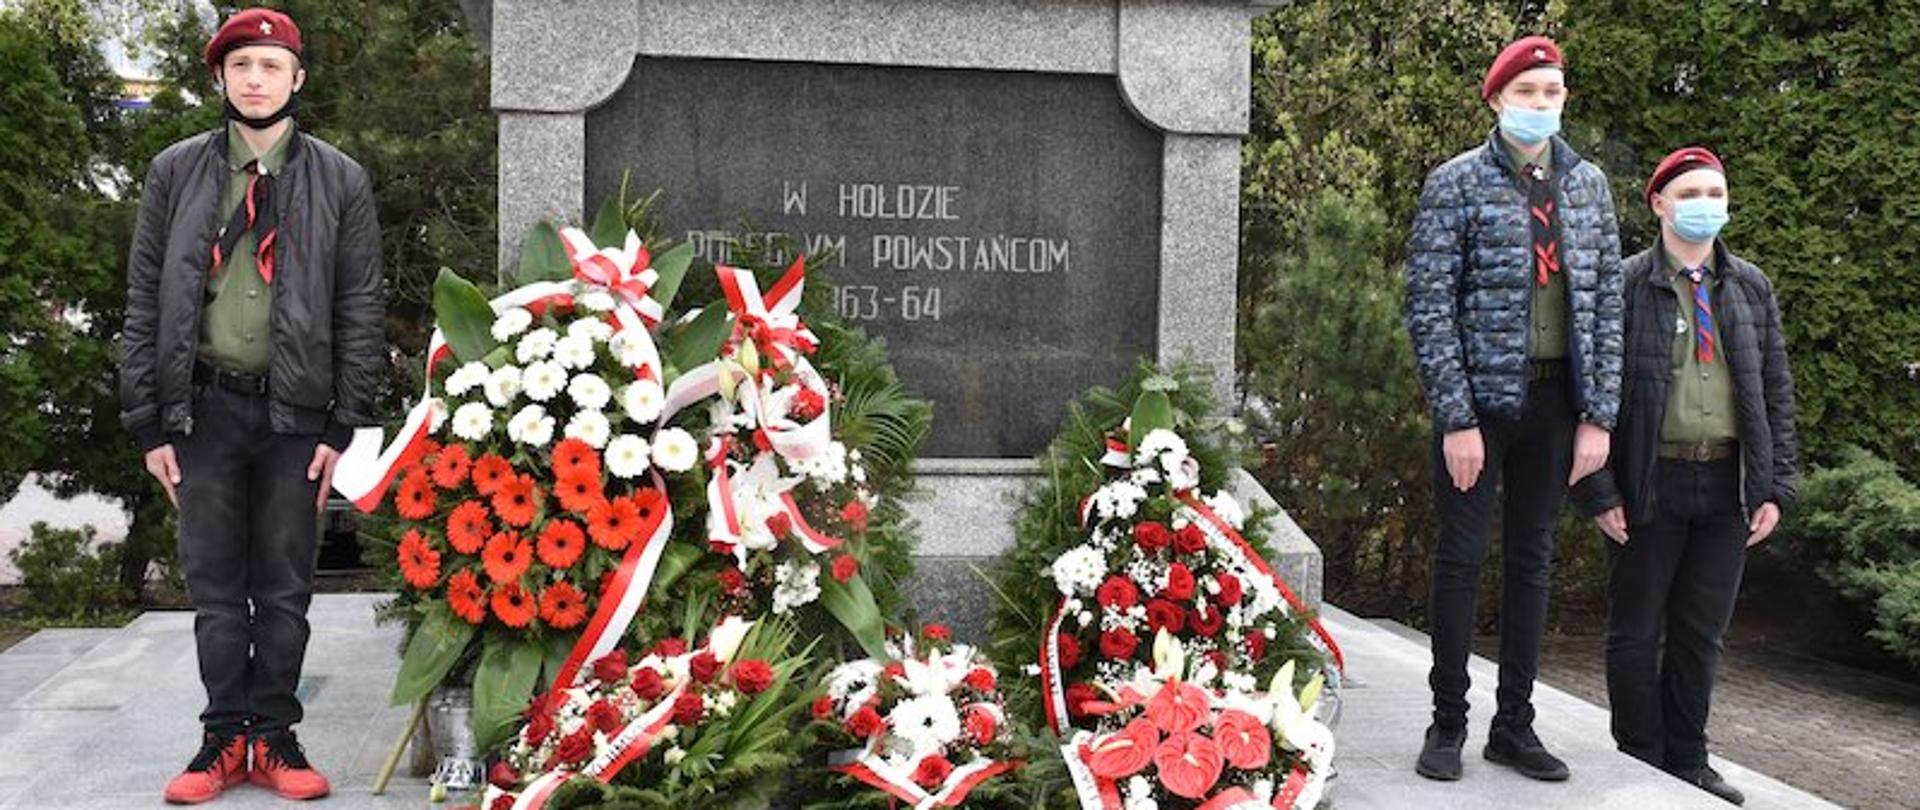 na zdjęciu znajduje się pomnik Powstania Styczniowego w Zambrowie, a przy nim stoją harcerze, którzy pełnią wartę oraz 6 wiązanki kwiatów